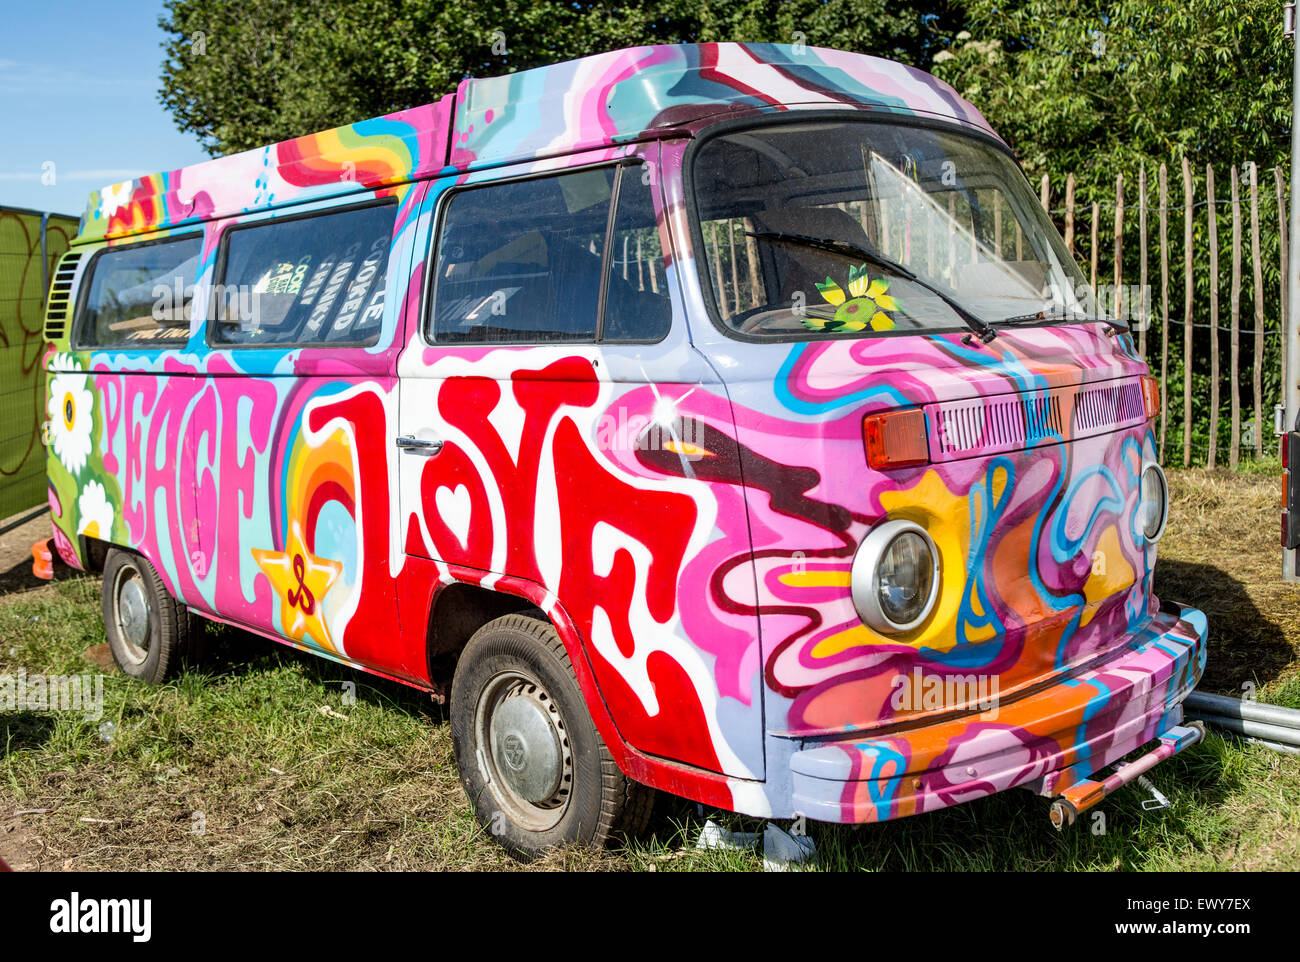 classic-psychedelic-painted-vw-camper-van-glastonbury-festival-uk-EWY7EX.jpg